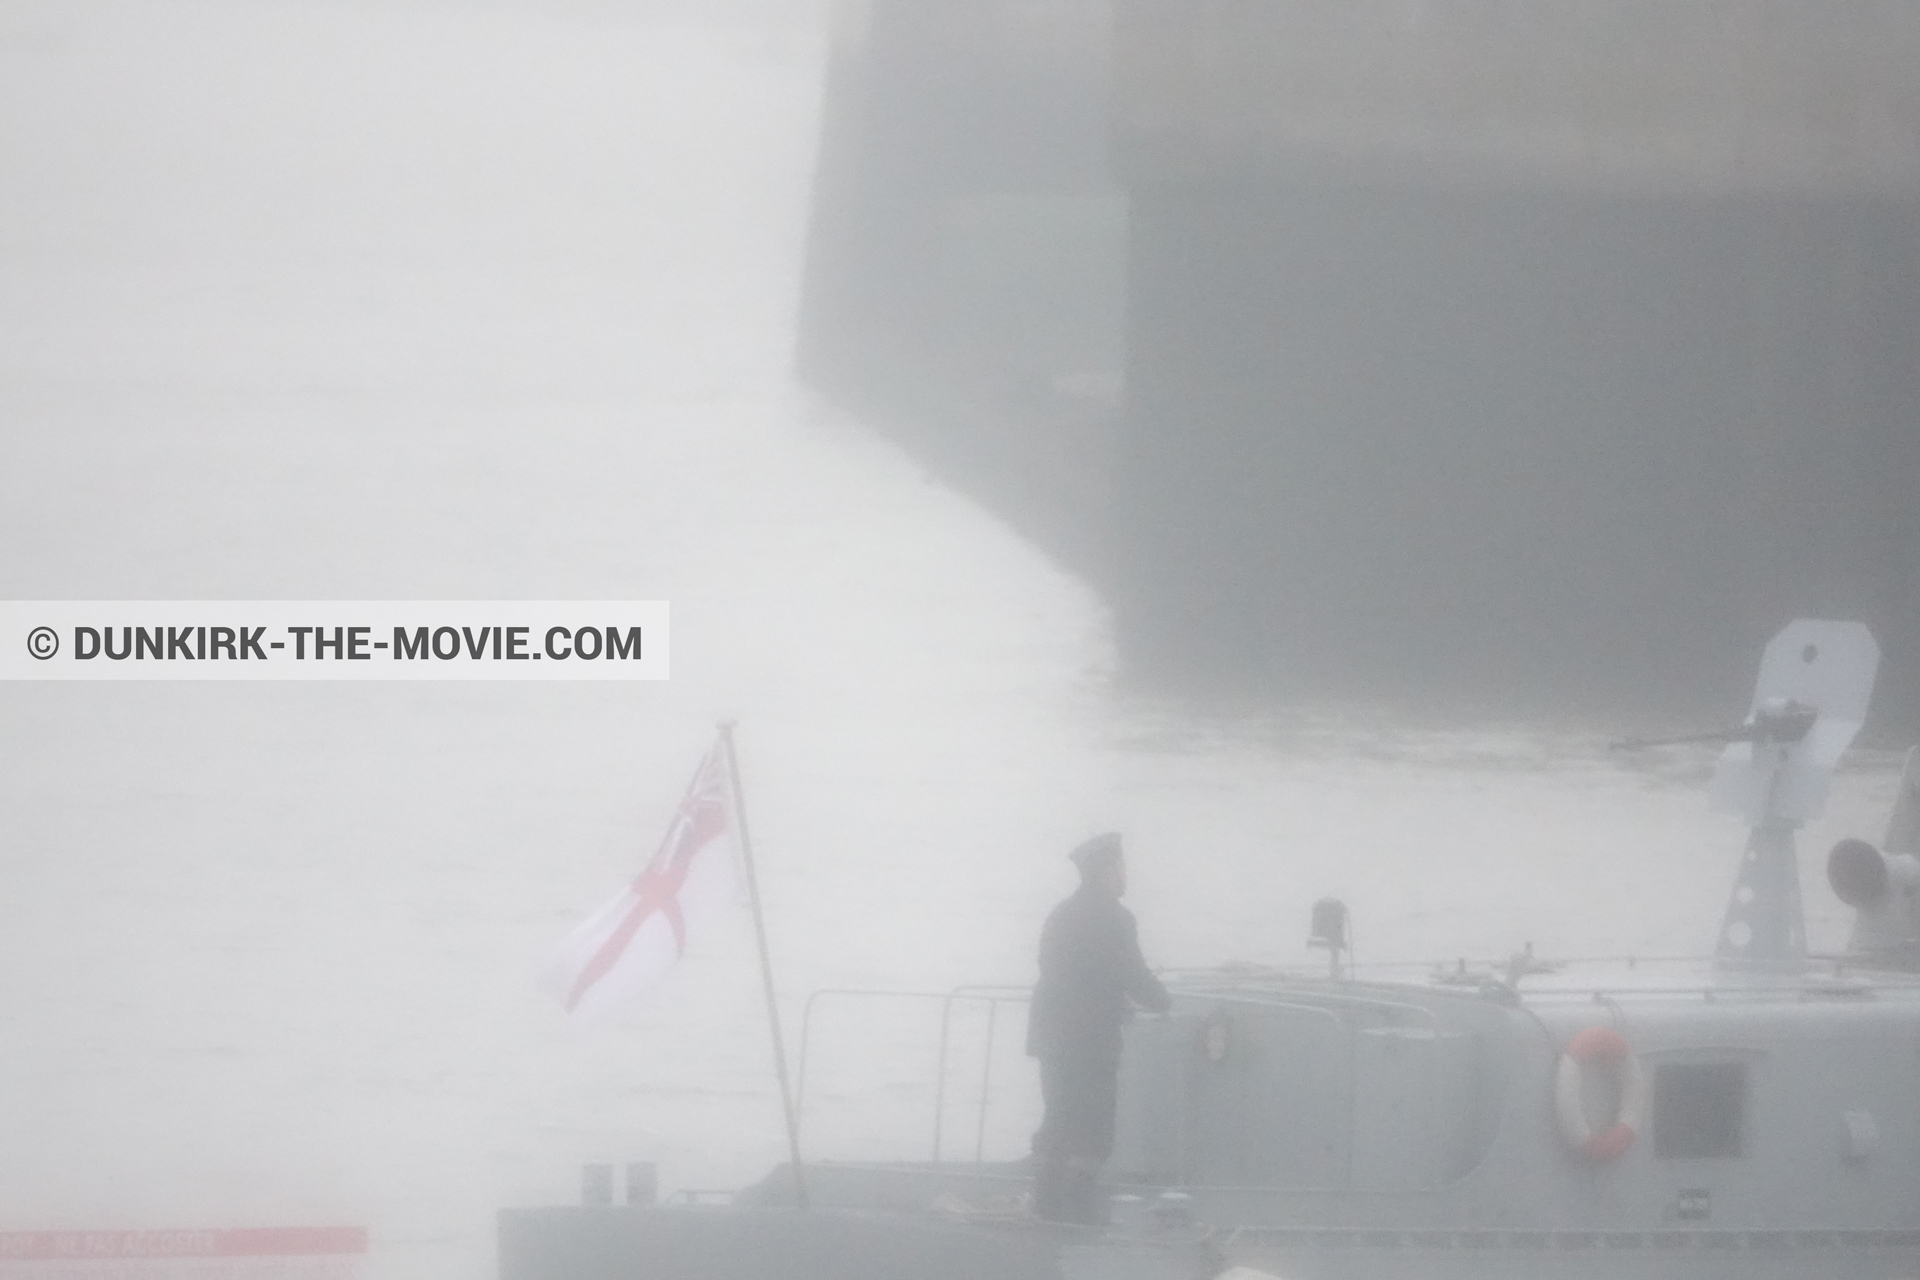 Fotos con barco, cielo gris, PR 22,  durante el rodaje de la película Dunkerque de Nolan